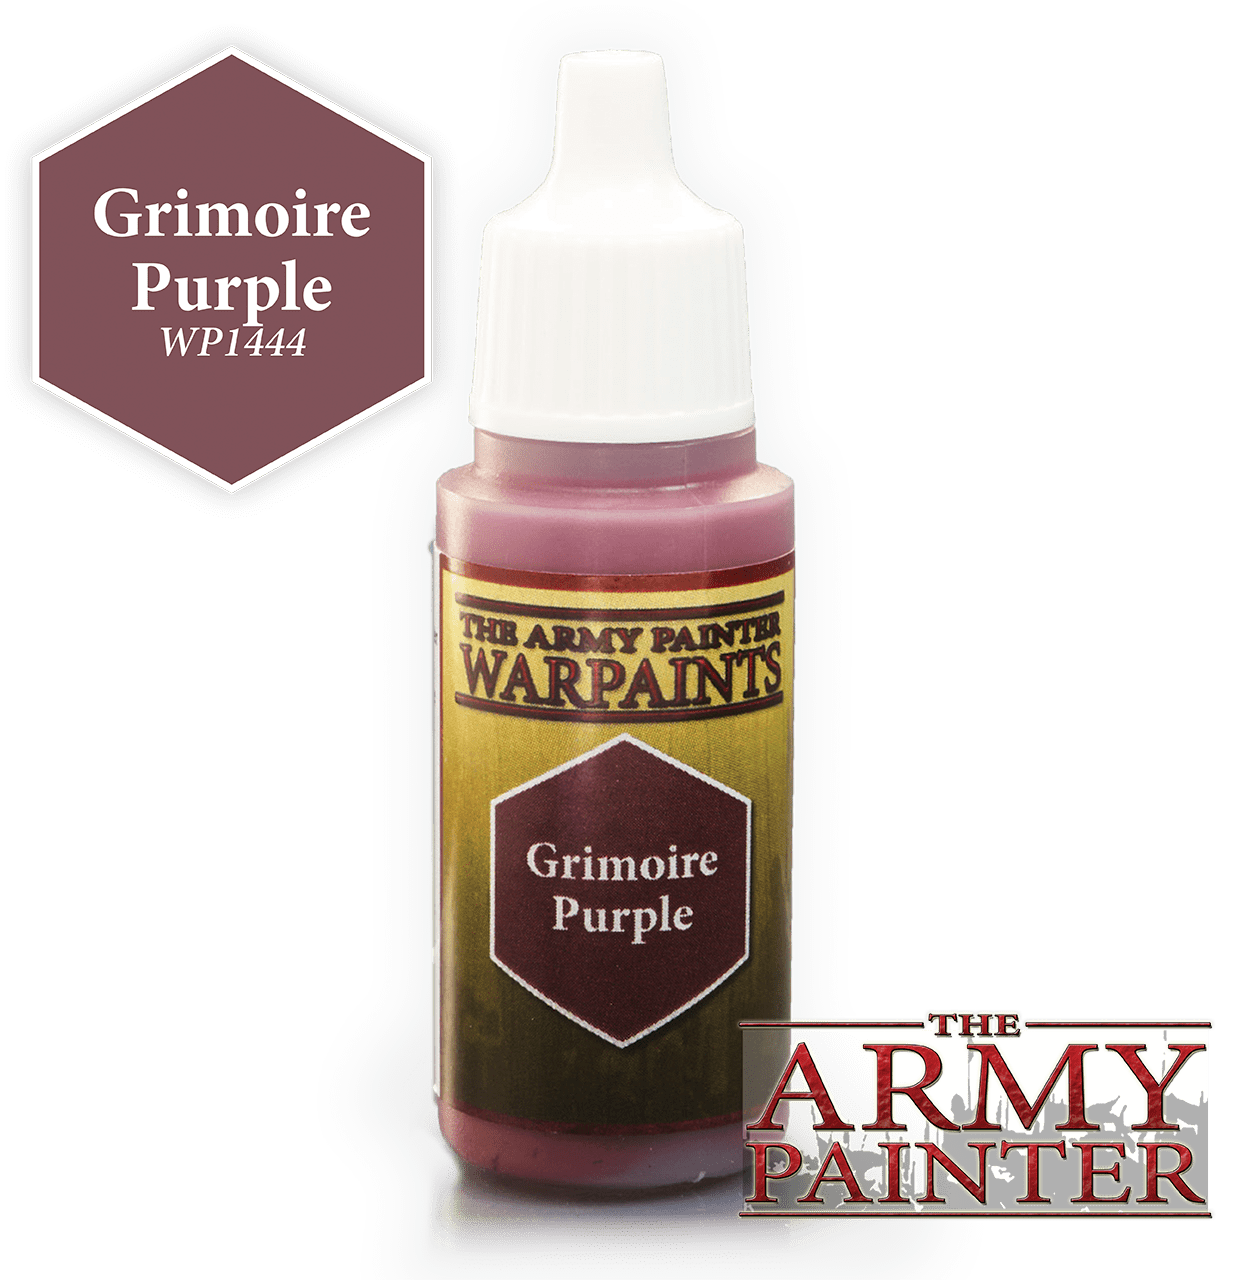 The Army Painter: Warpaints - Grimoire Purple (2021)